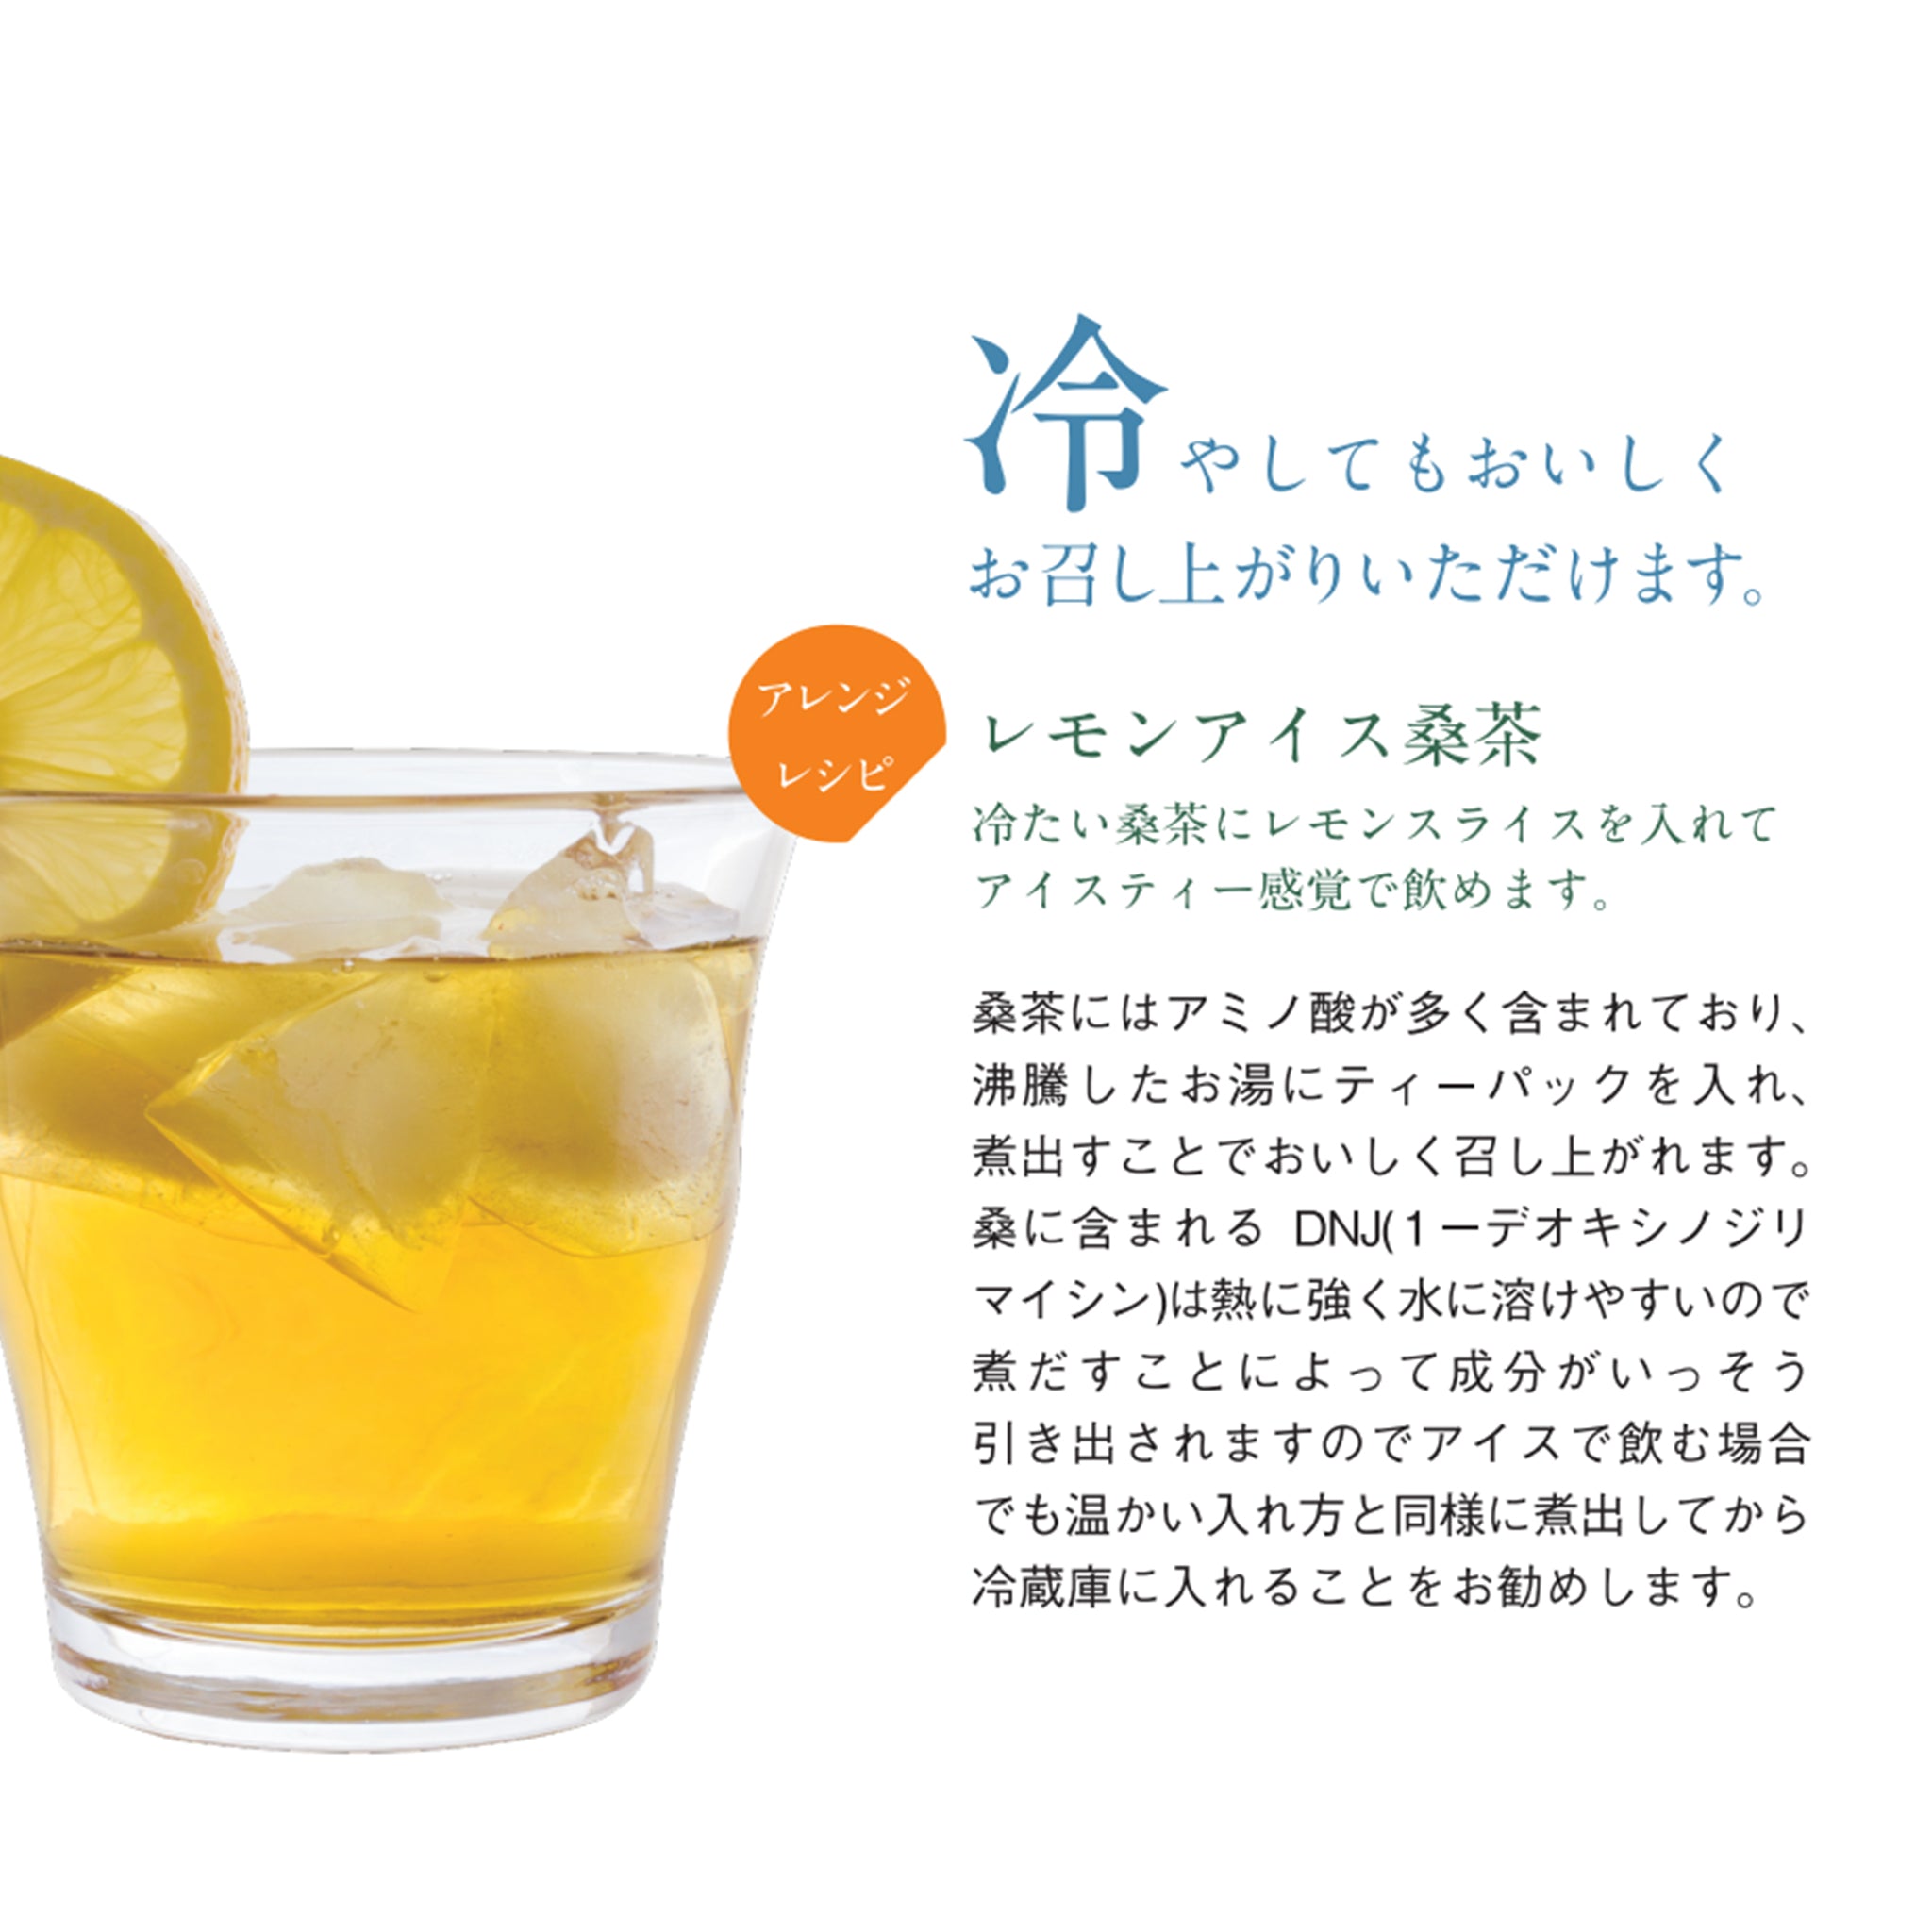 Organic mulberry leaf tea (36 tea bags) | 桜江町桑茶生産組合 | 嶋ノ屋